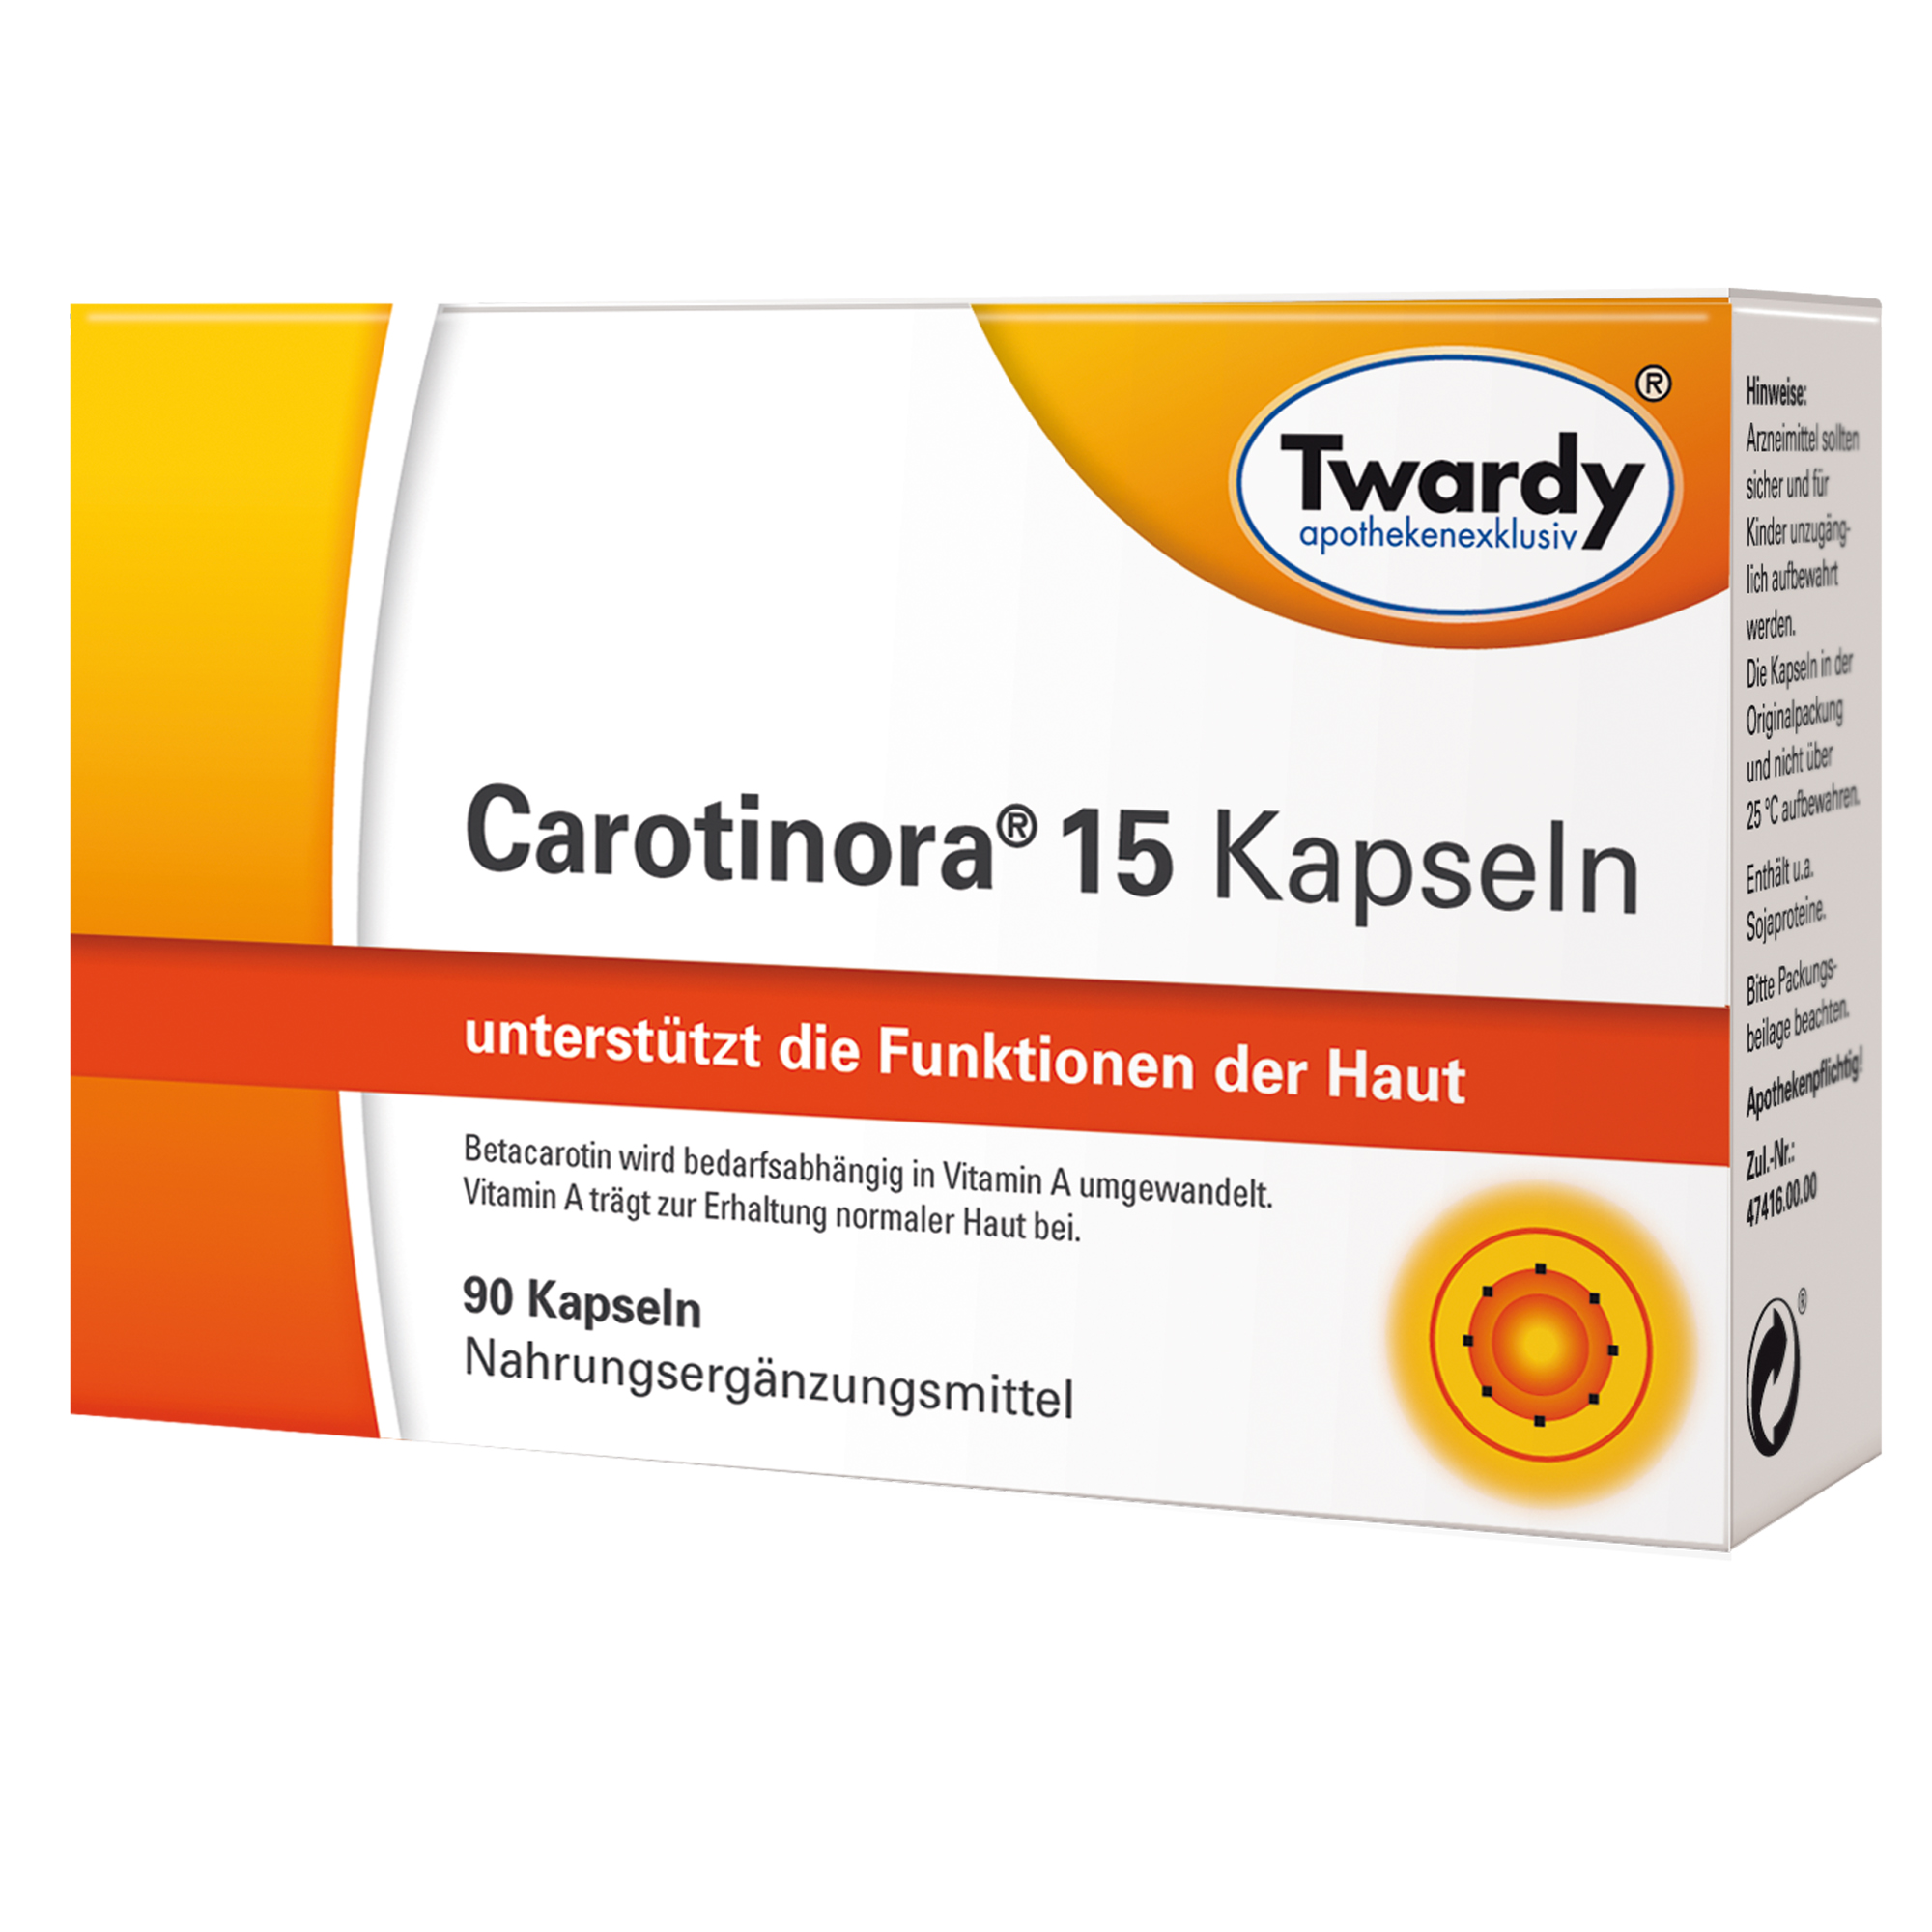 Carotinora® 15 Kapseln